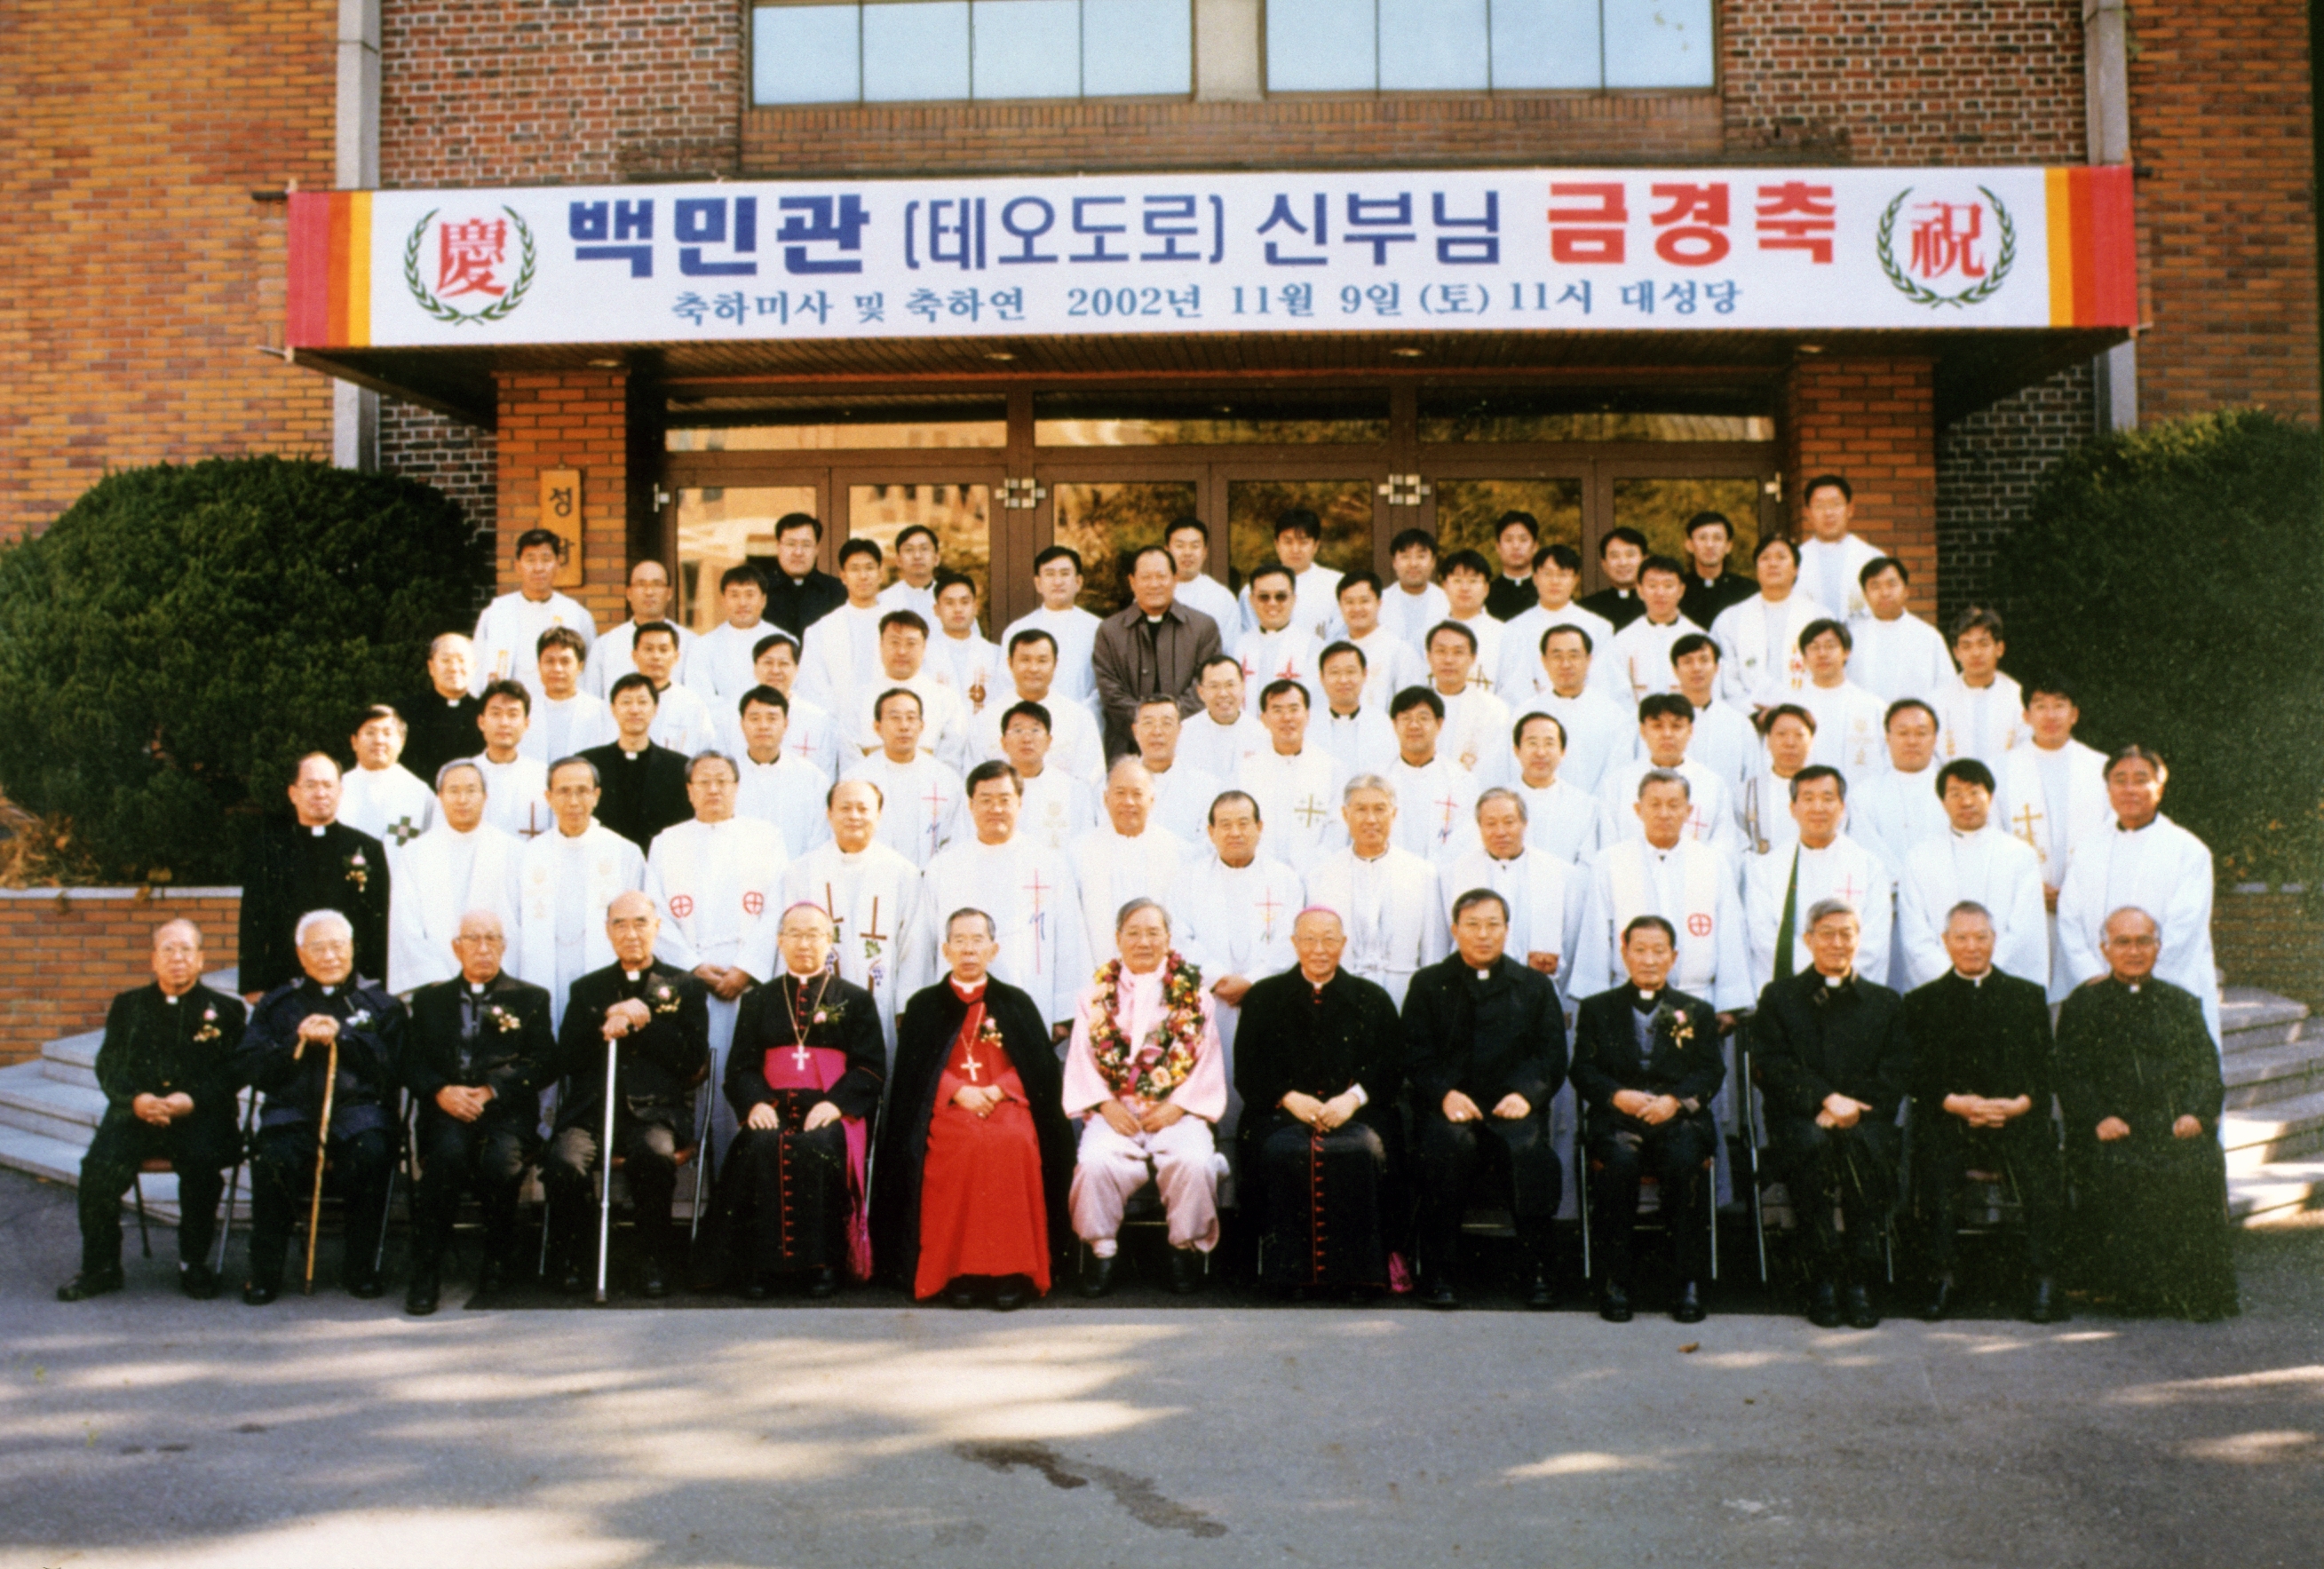 가톨릭대학교 (1995통합 - ) (3)의 관련된 이미지 입니다.